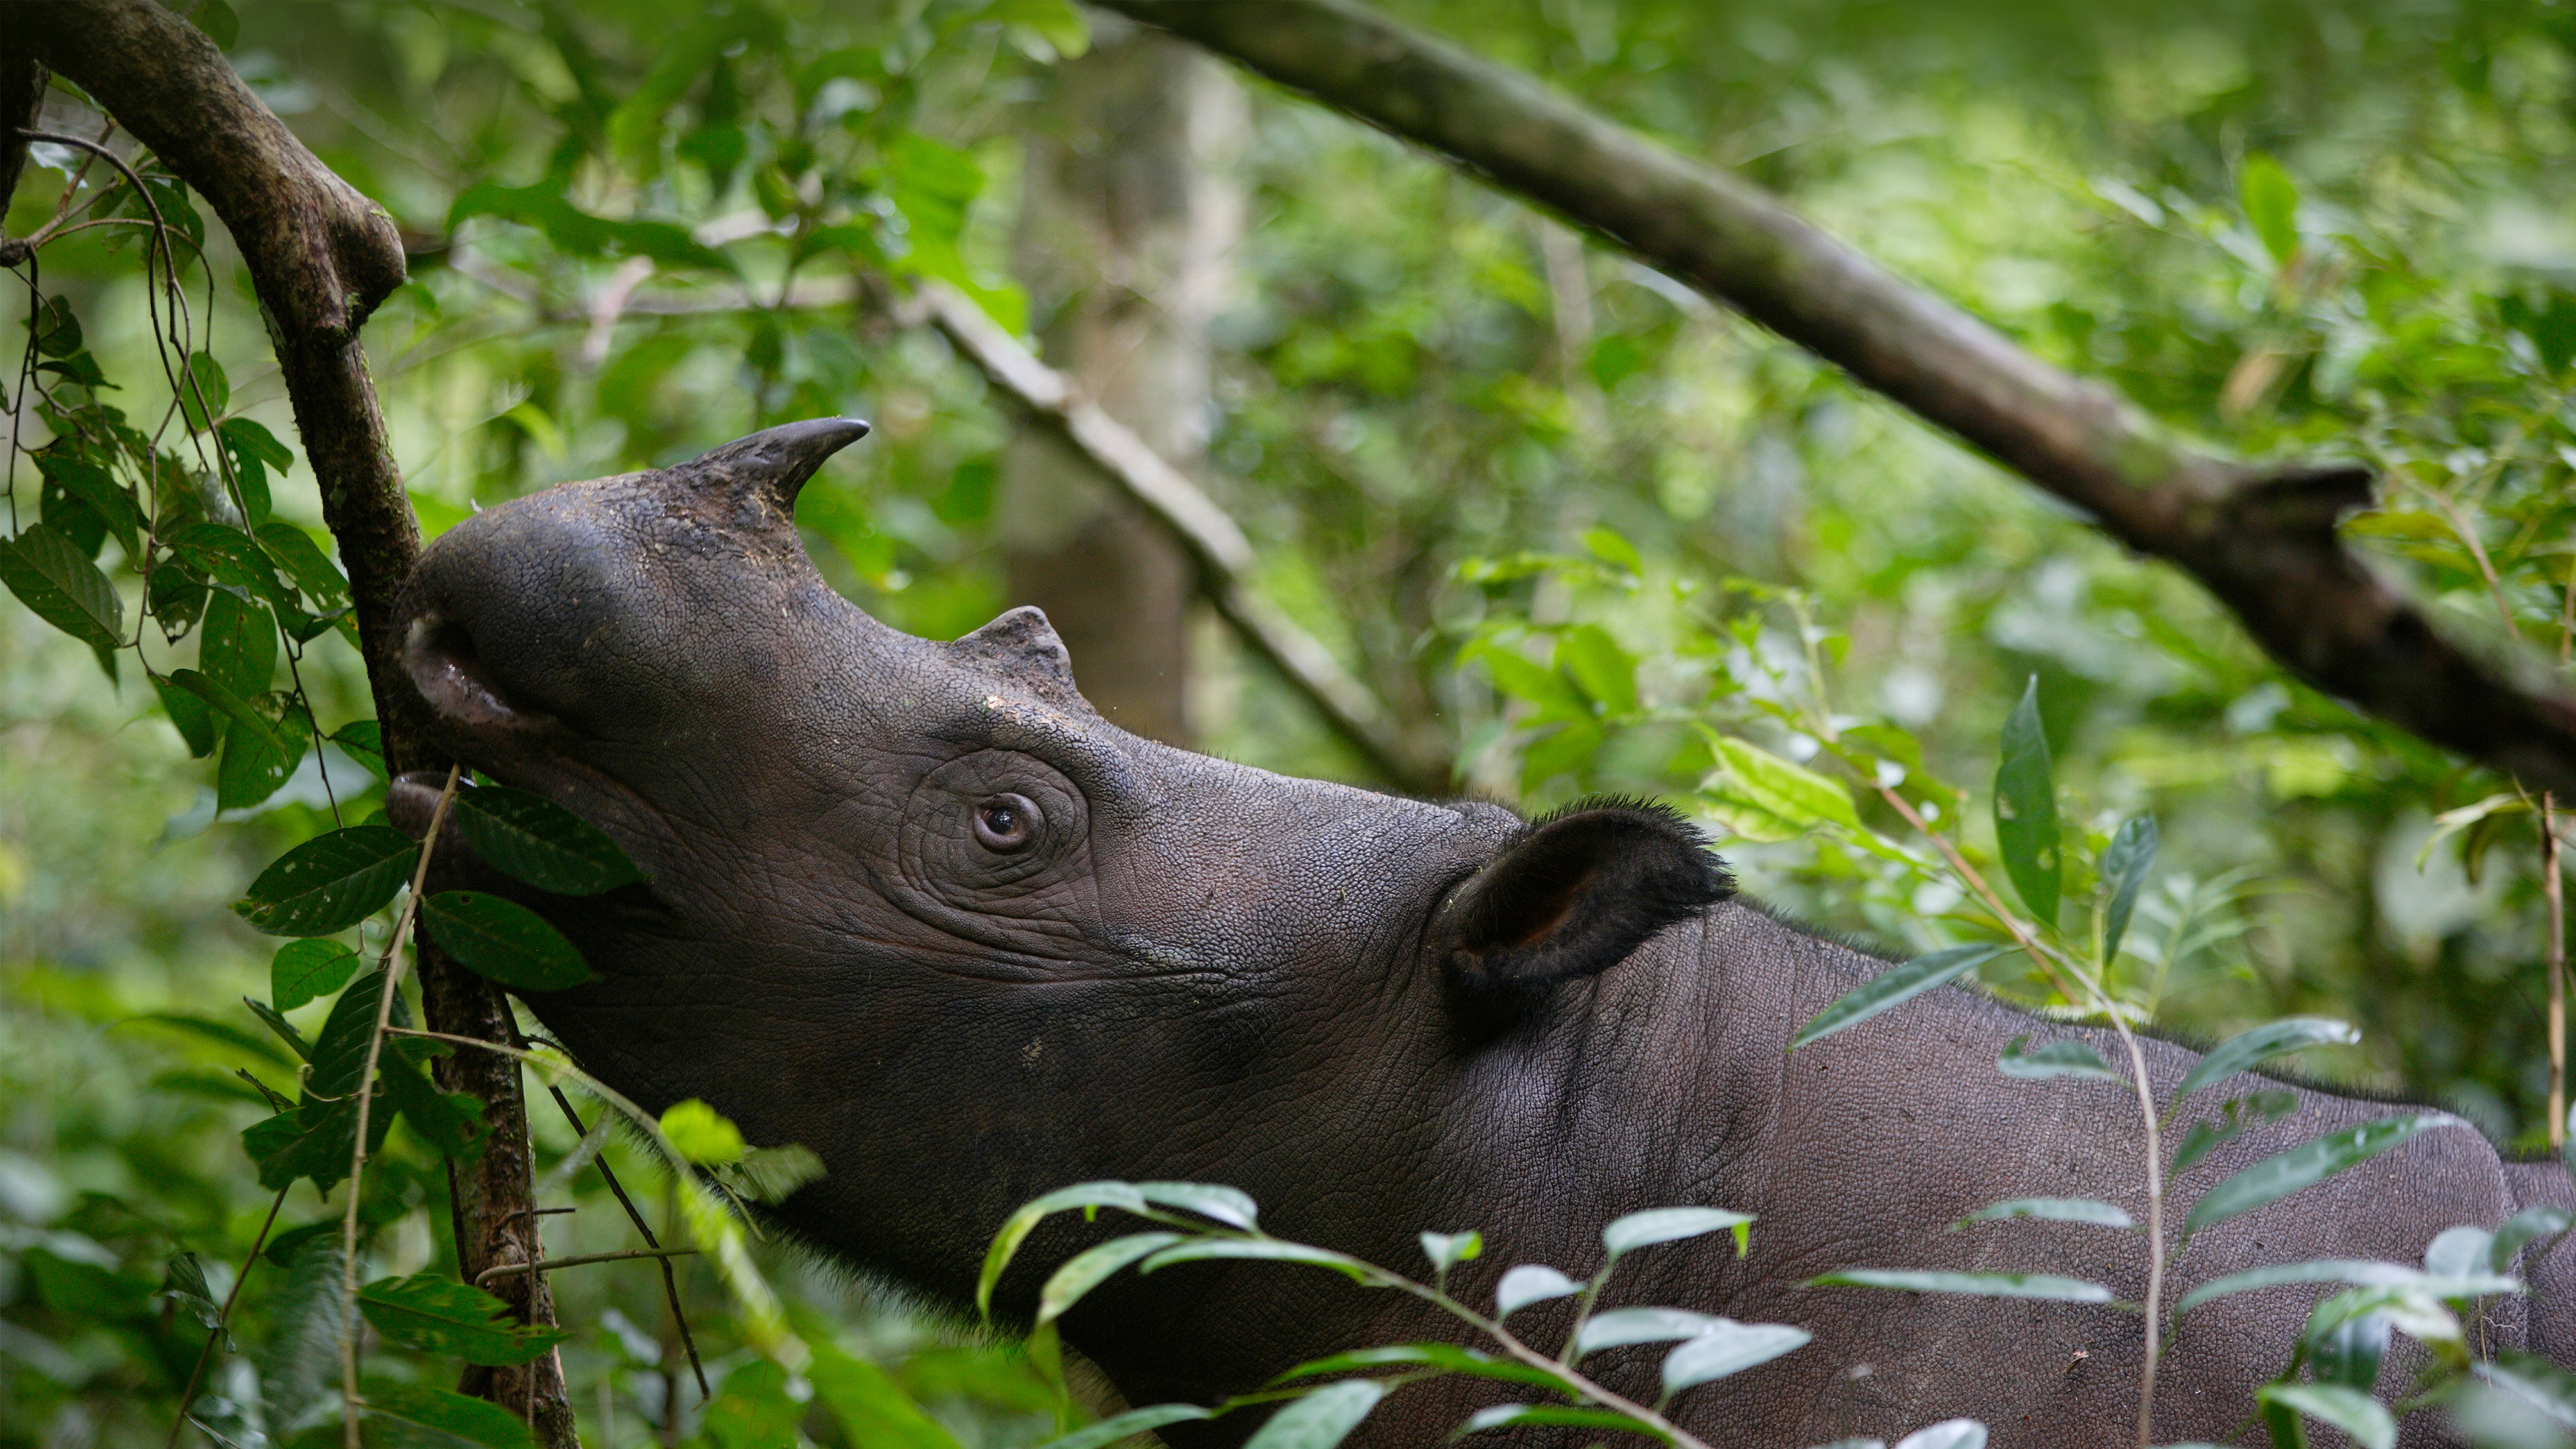 Sumatran rhinoceros, Way Kambas National Park, Indonesia by Cyril Ruoso